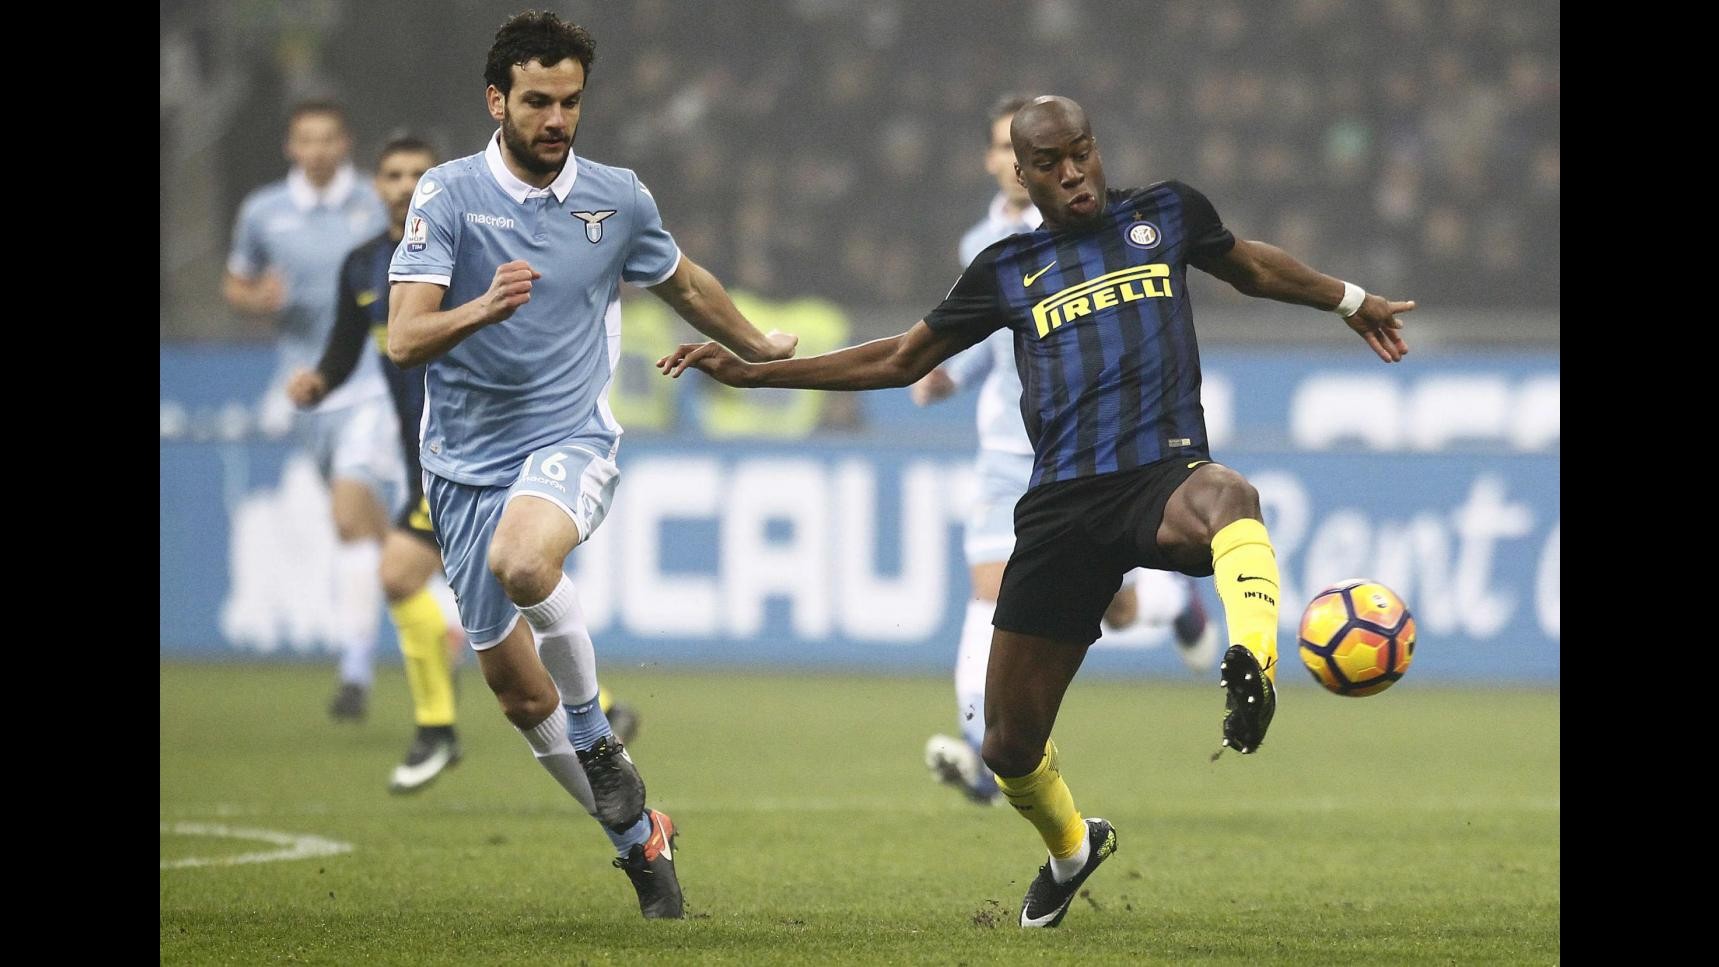 FOTO Coppa Italia, Lazio in semifinale: 2-1 all’Inter